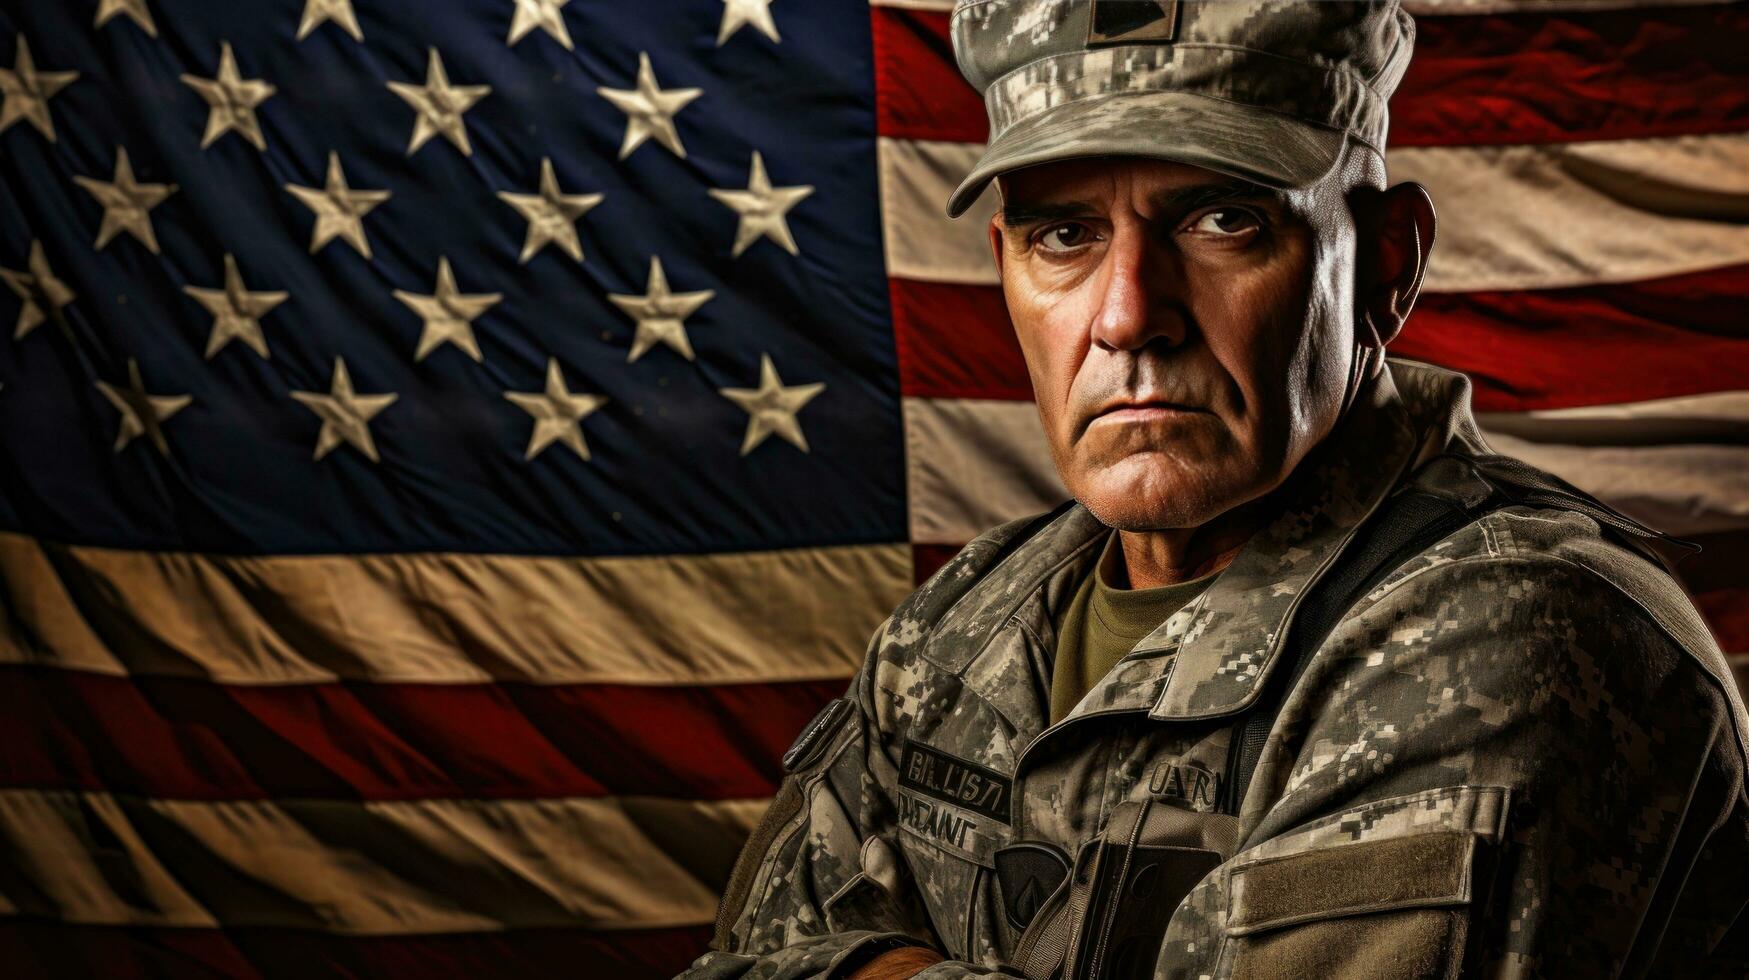 ett äldre manlig soldat i militär enhetlig stående i främre av ett amerikan flagga foto